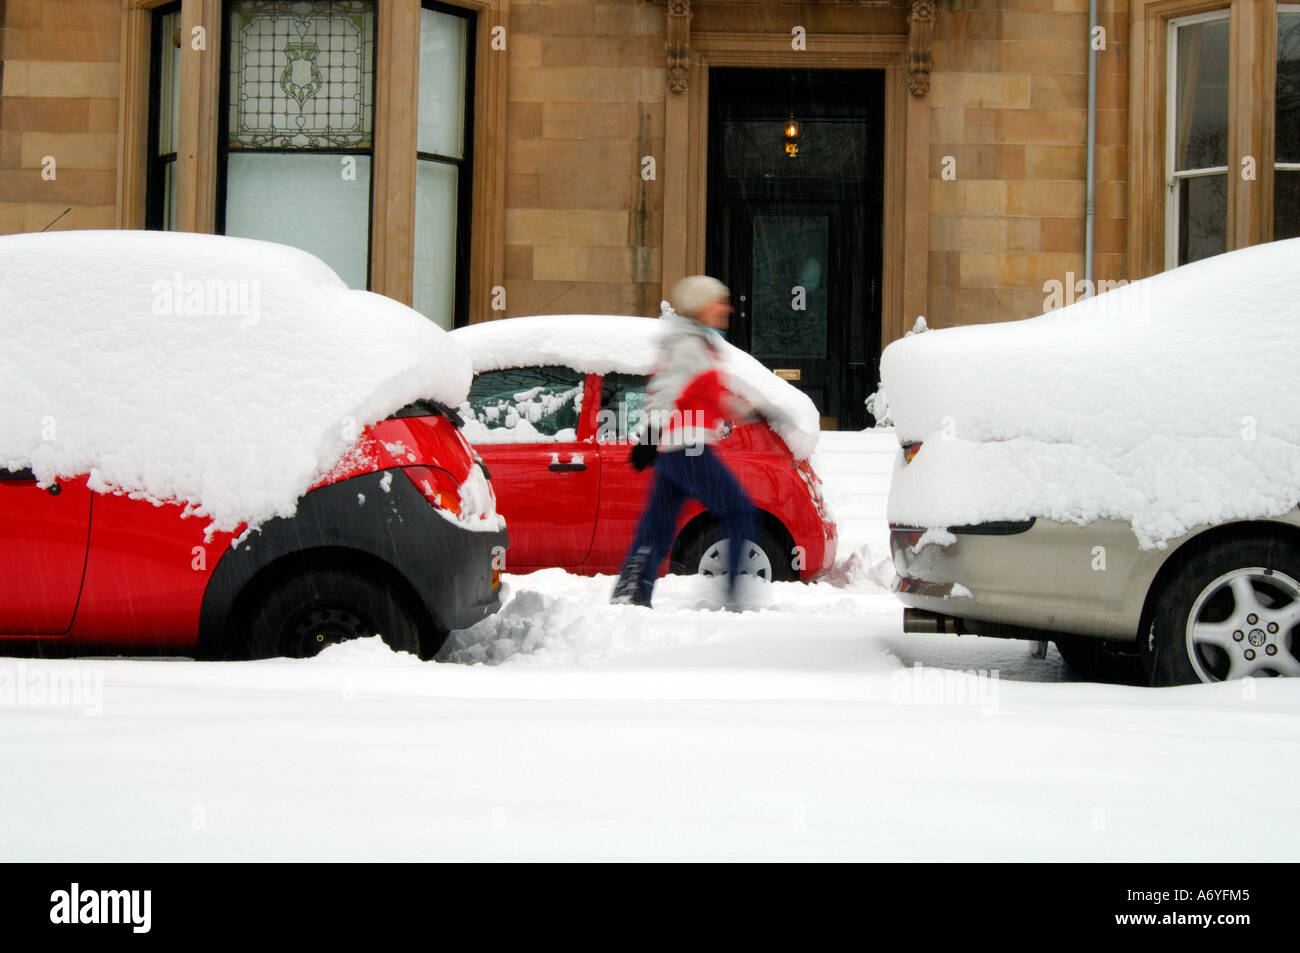 Frau mit roter Jacke Wandern in starkem Schneefall zwischen parkenden Autos Stockfoto